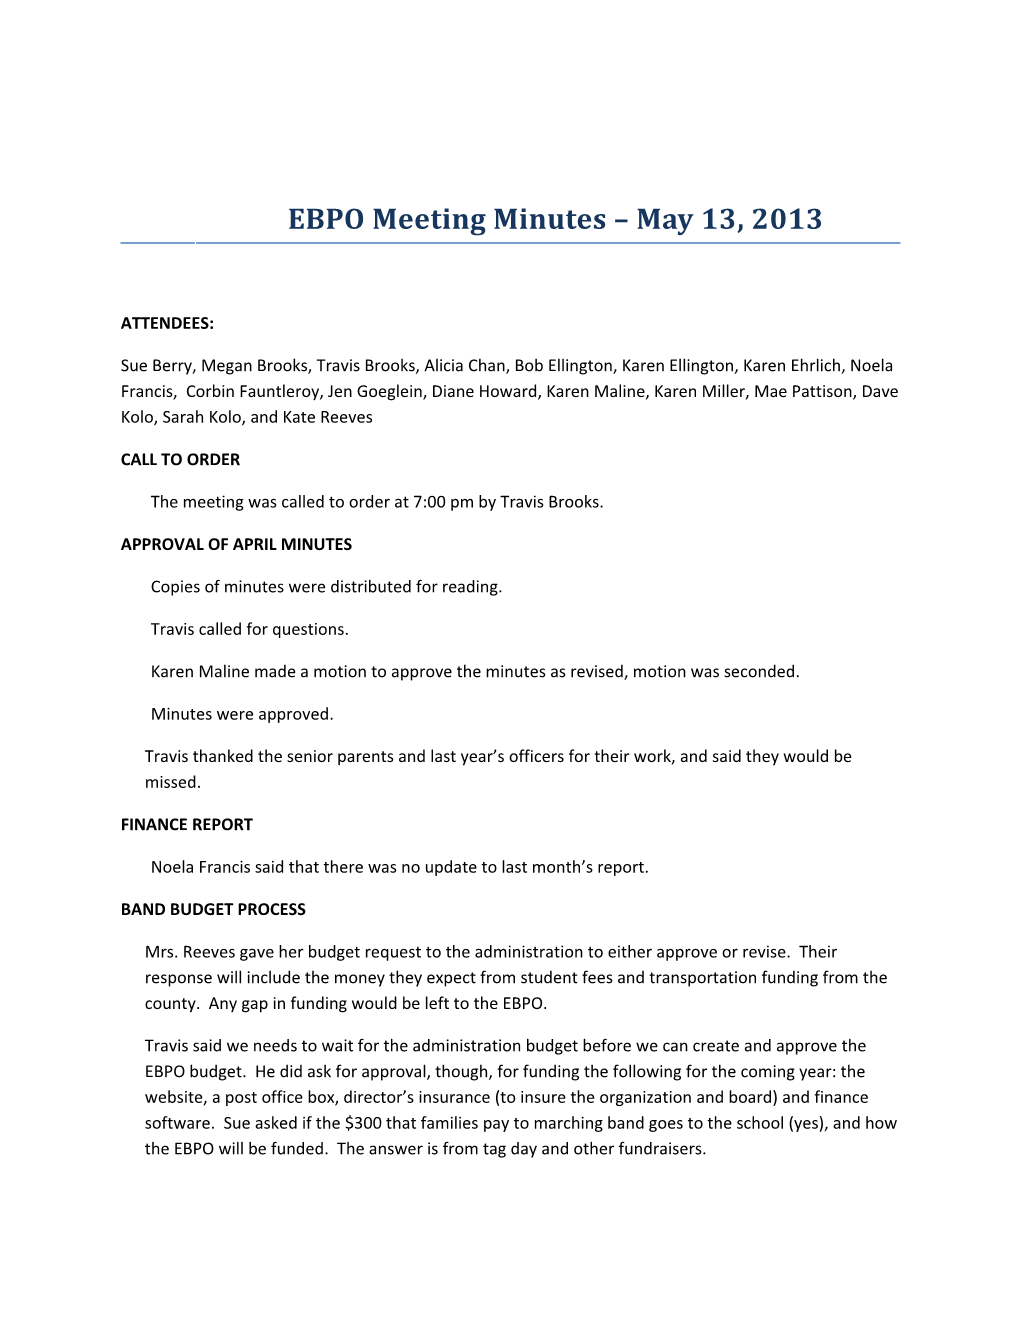 EBPO Meeting Minutes May 13, 2013